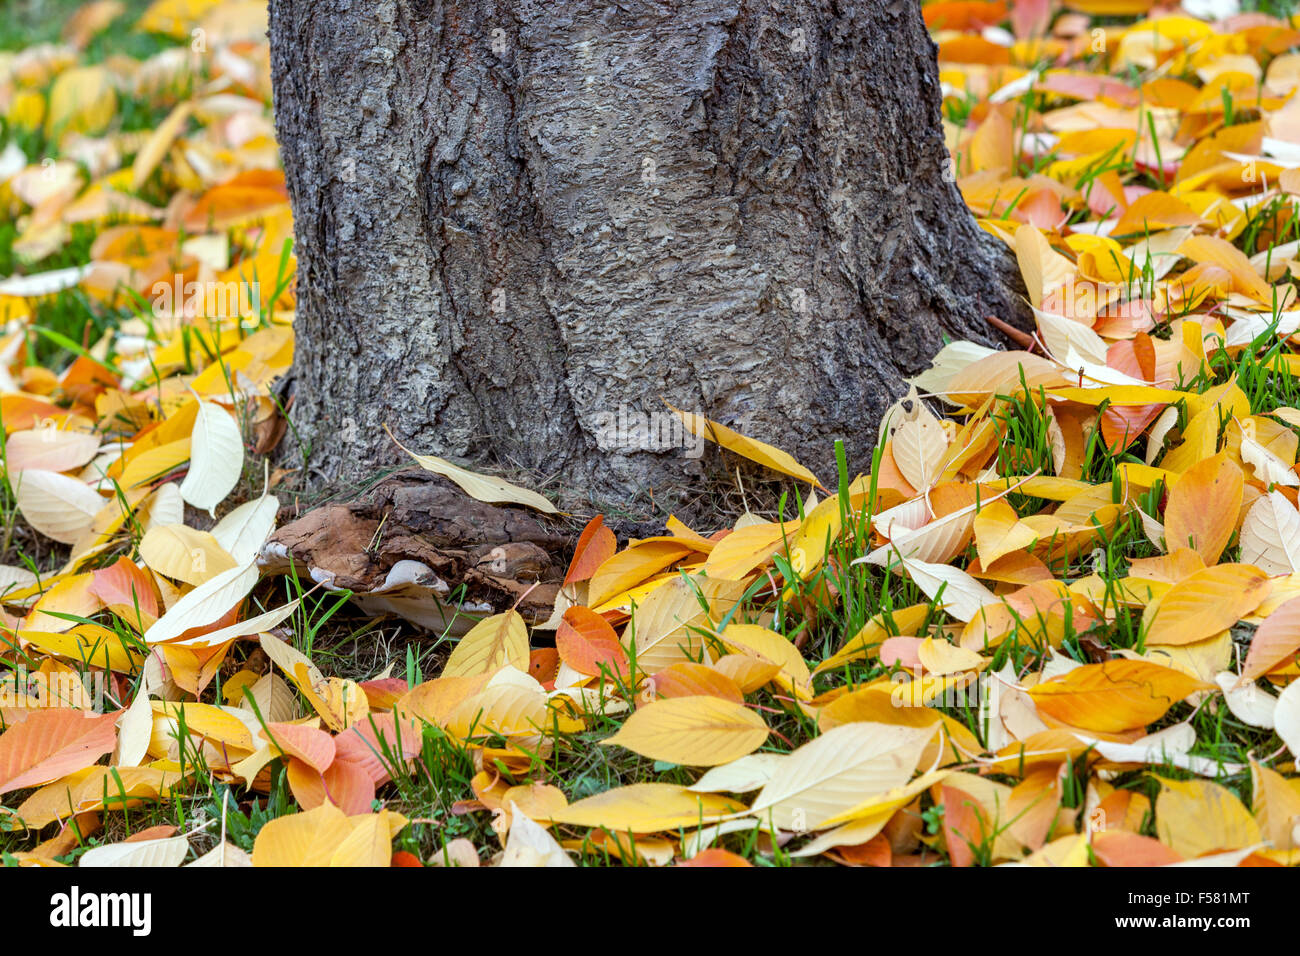 Fallen autumn leaves on the ground lying on the grass around tree trunk, old bark Prunus serrulata Stock Photo